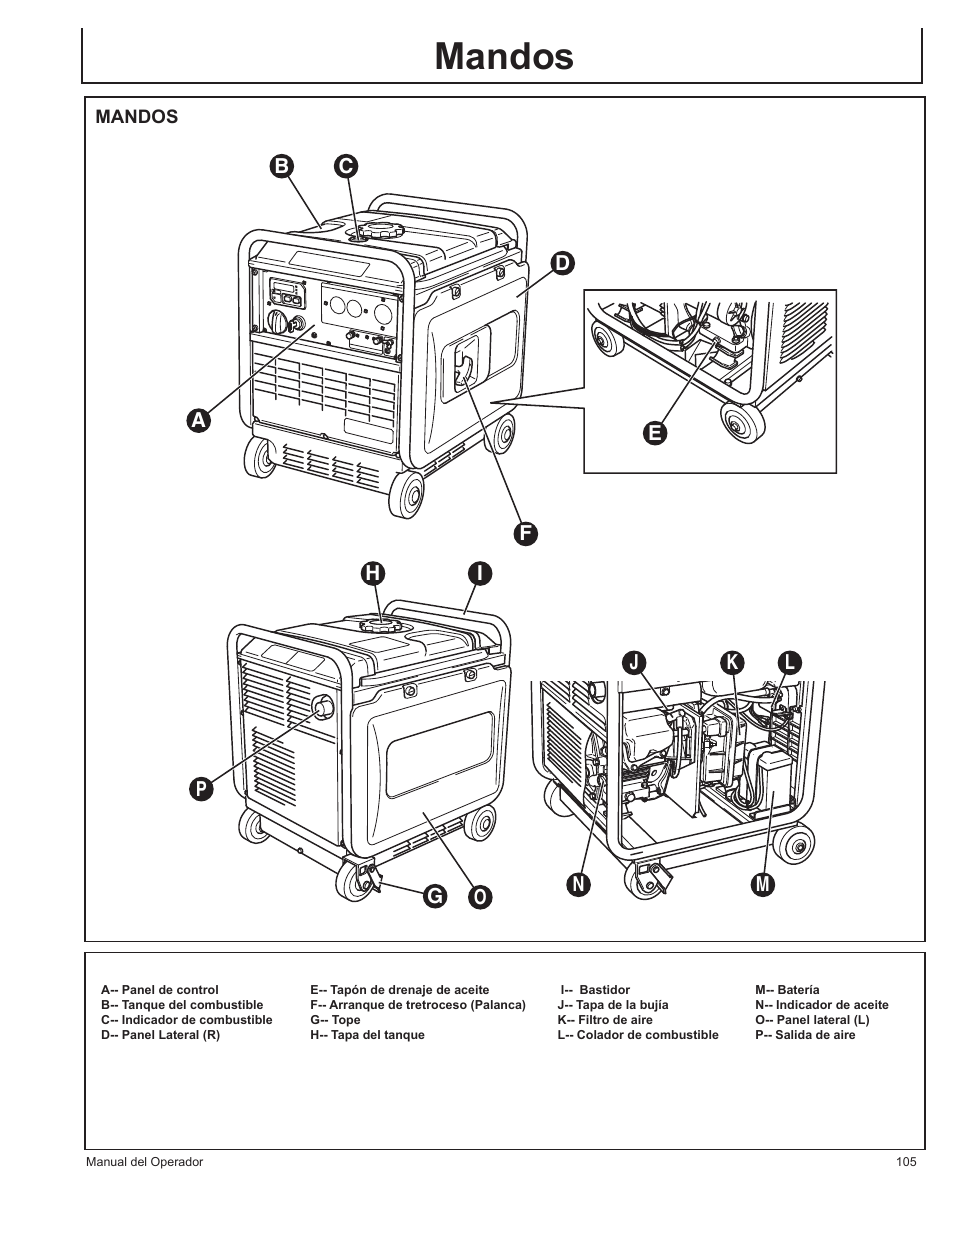 Mandos | John Deere AC-G3200i User Manual | Page 105 / 132